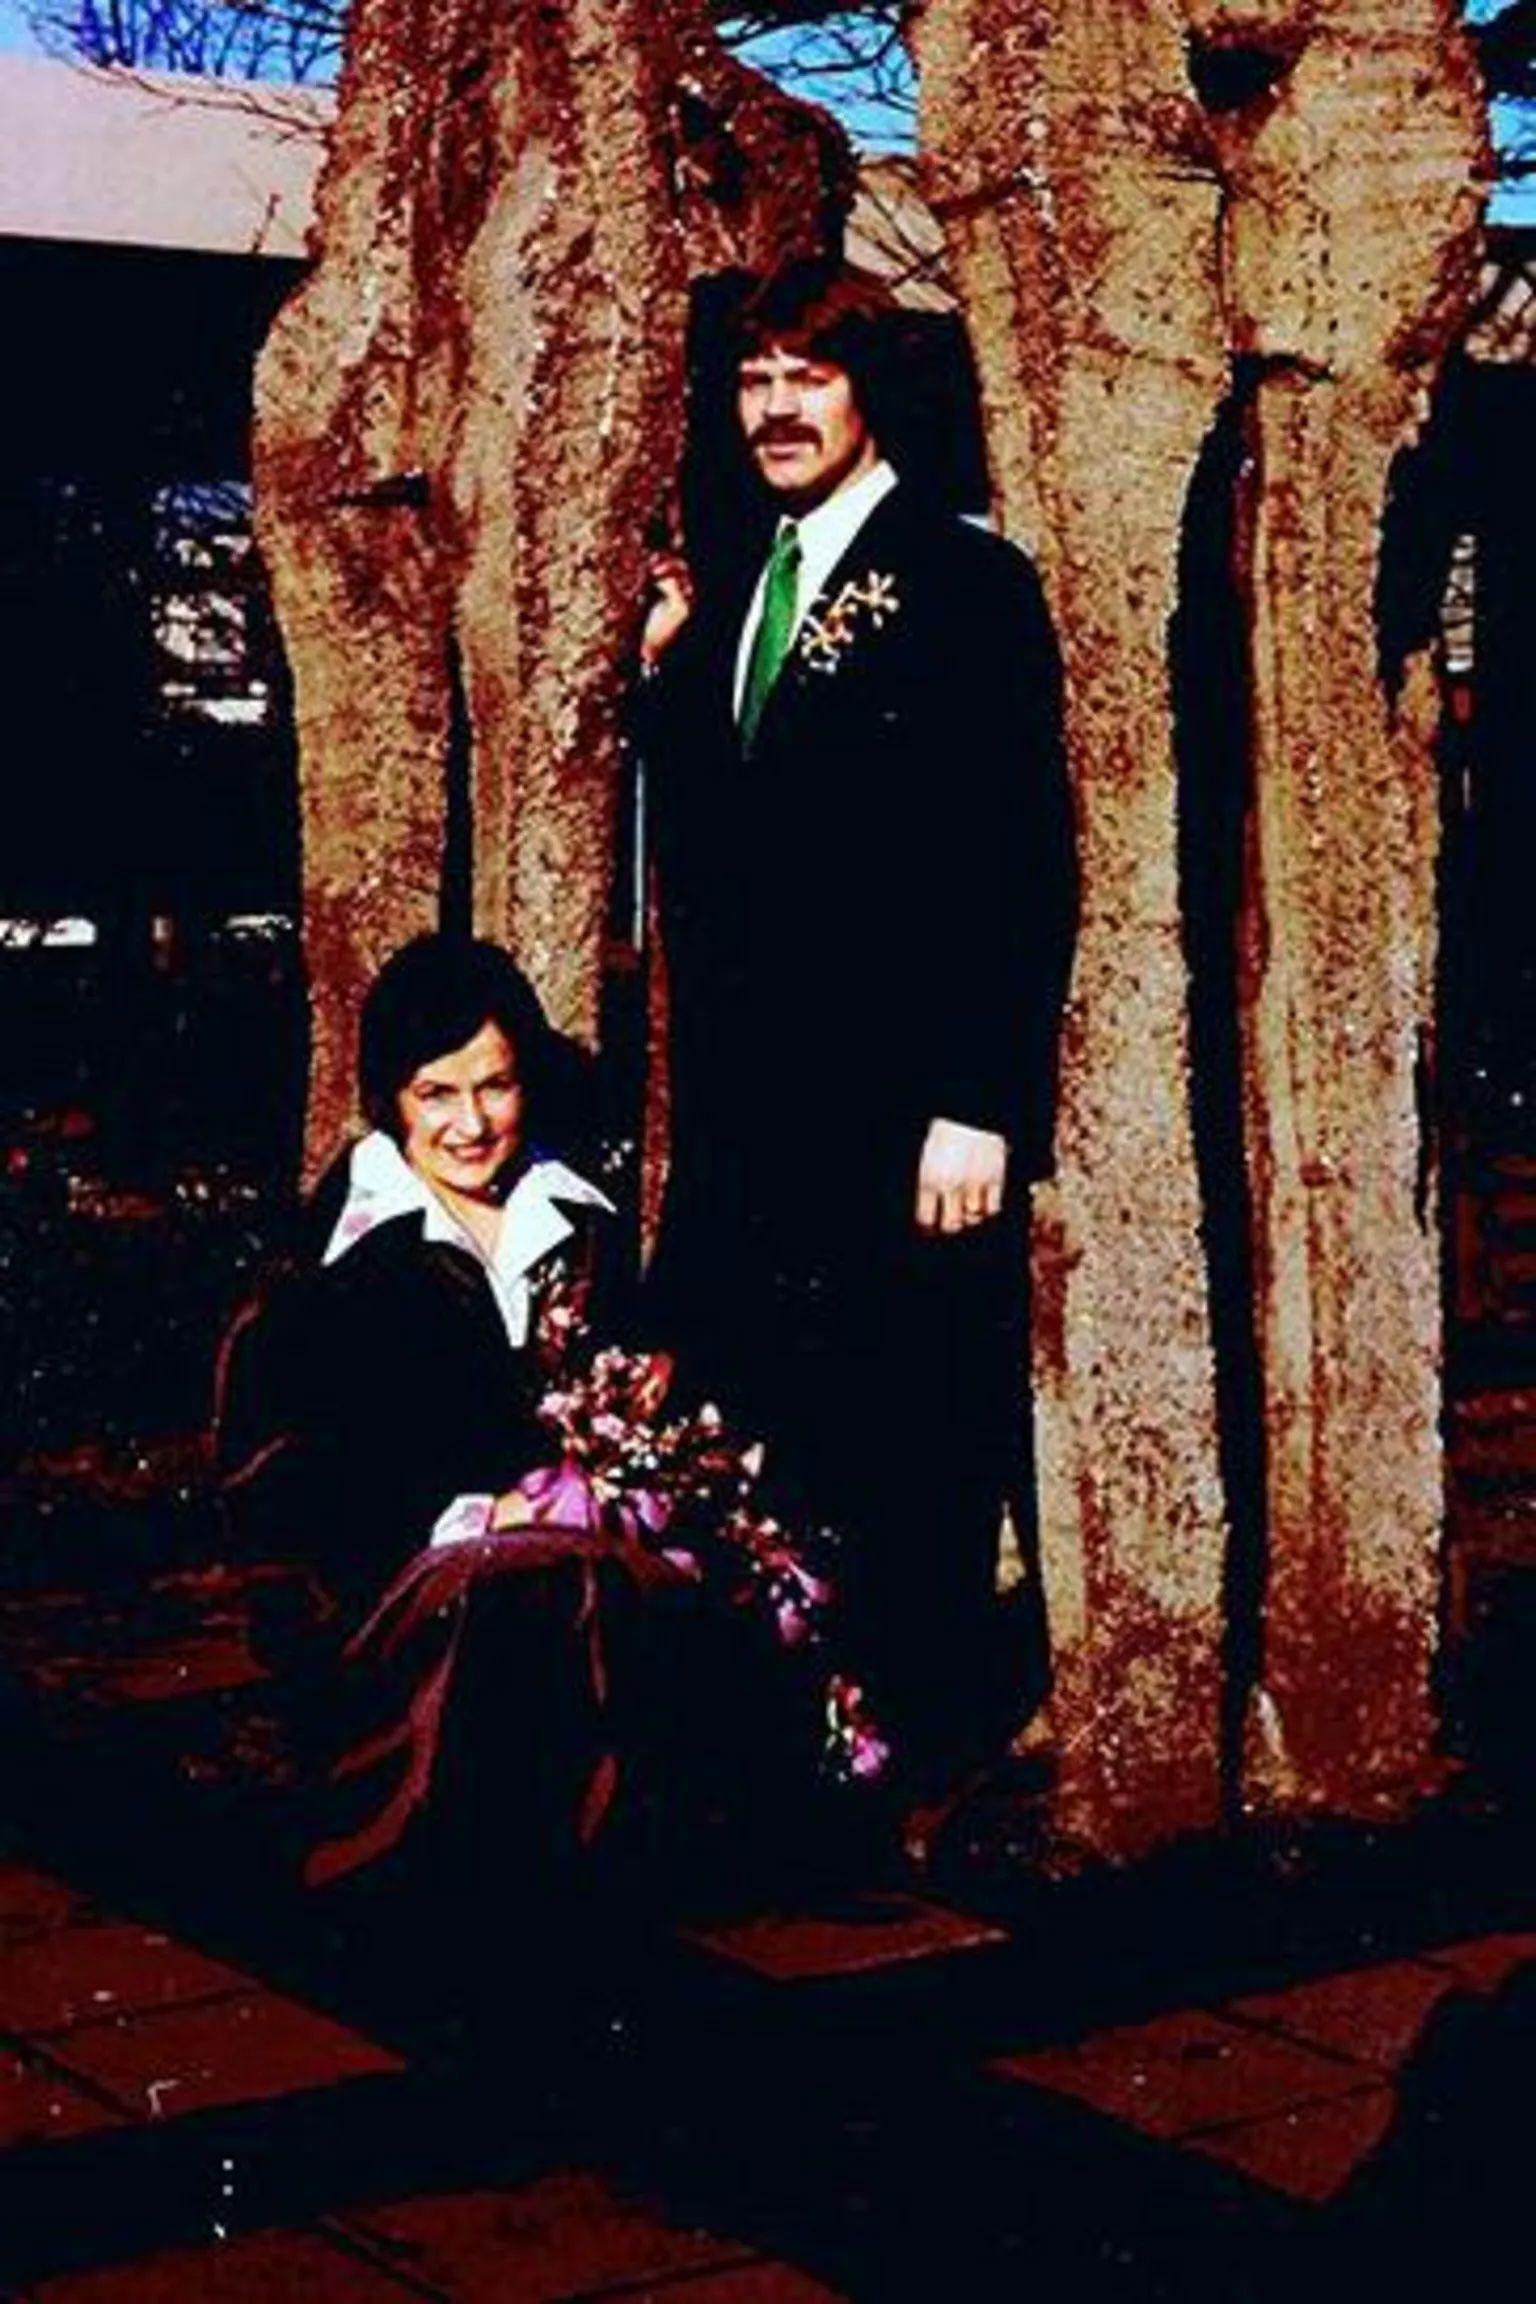 Els y Jan el día de su boda, 1975